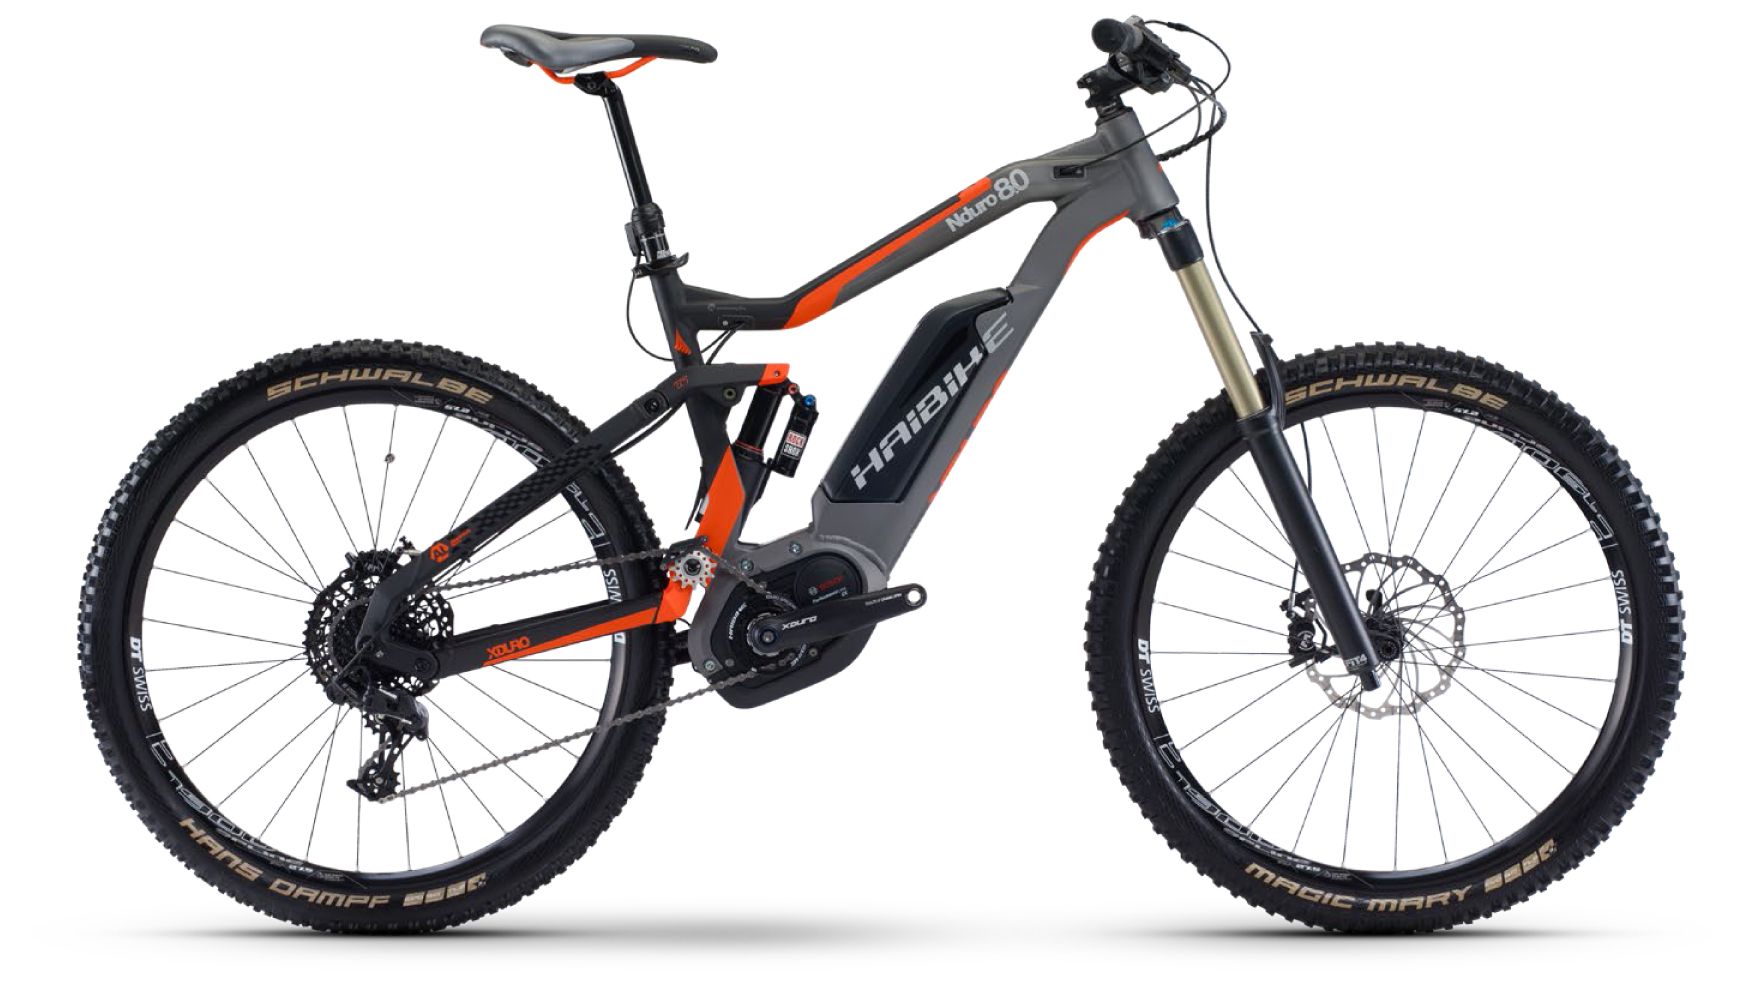  Отзывы о Горном велосипеде Haibike Xduro Nduro 8.0 500Wh 11s NX 2018